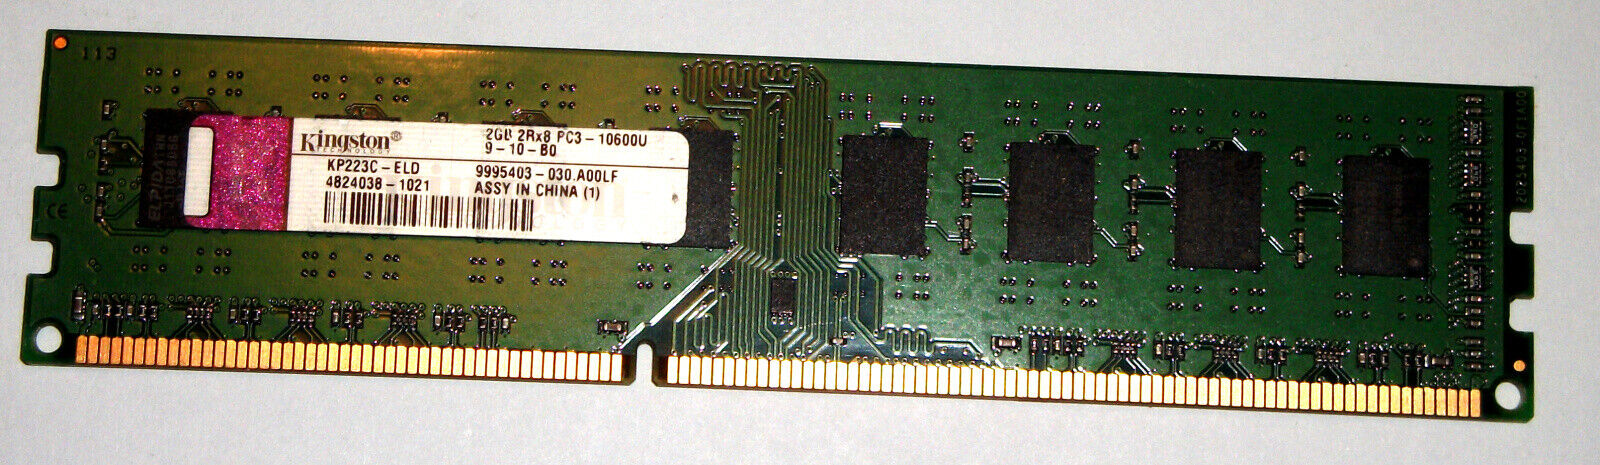 2GB DDR3 PC3-10600U \'Kingston KP223C-ELD\' 9995403